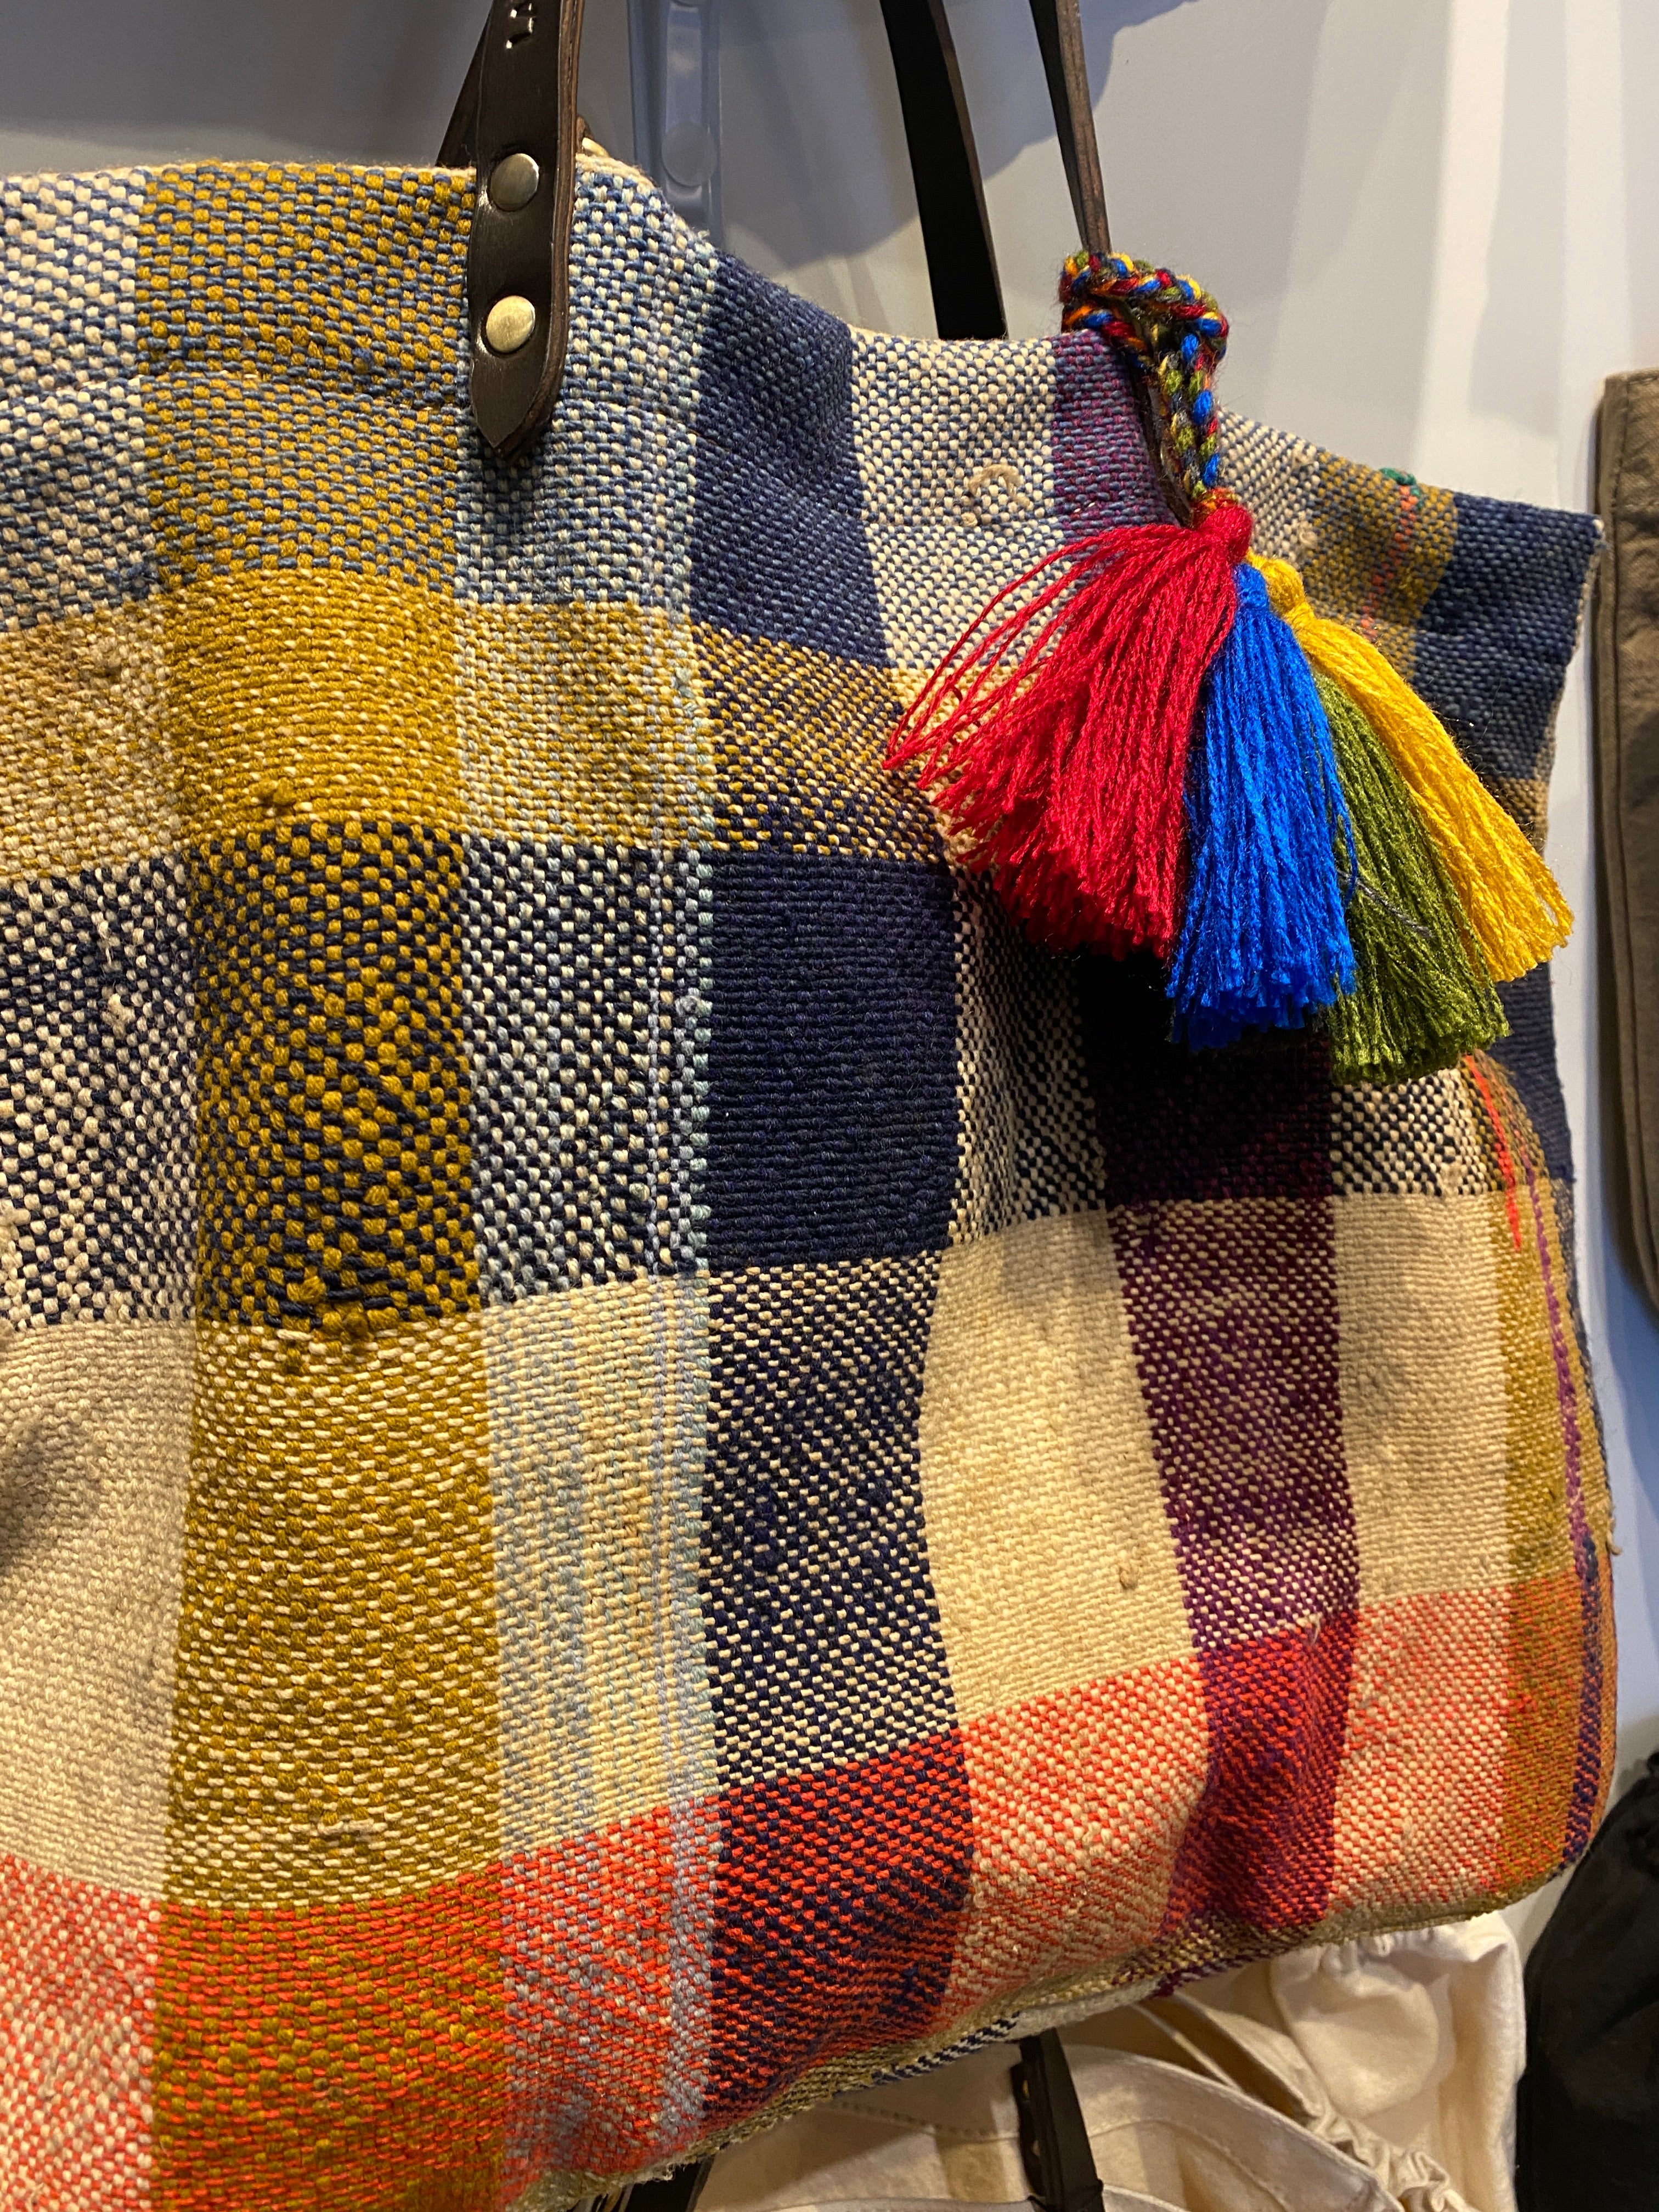 Die HAIK Berber Taschen von LABEL17 werden aus alten Beständen von Decken gefertigt und verfügen über Handgriffe aus Leder.